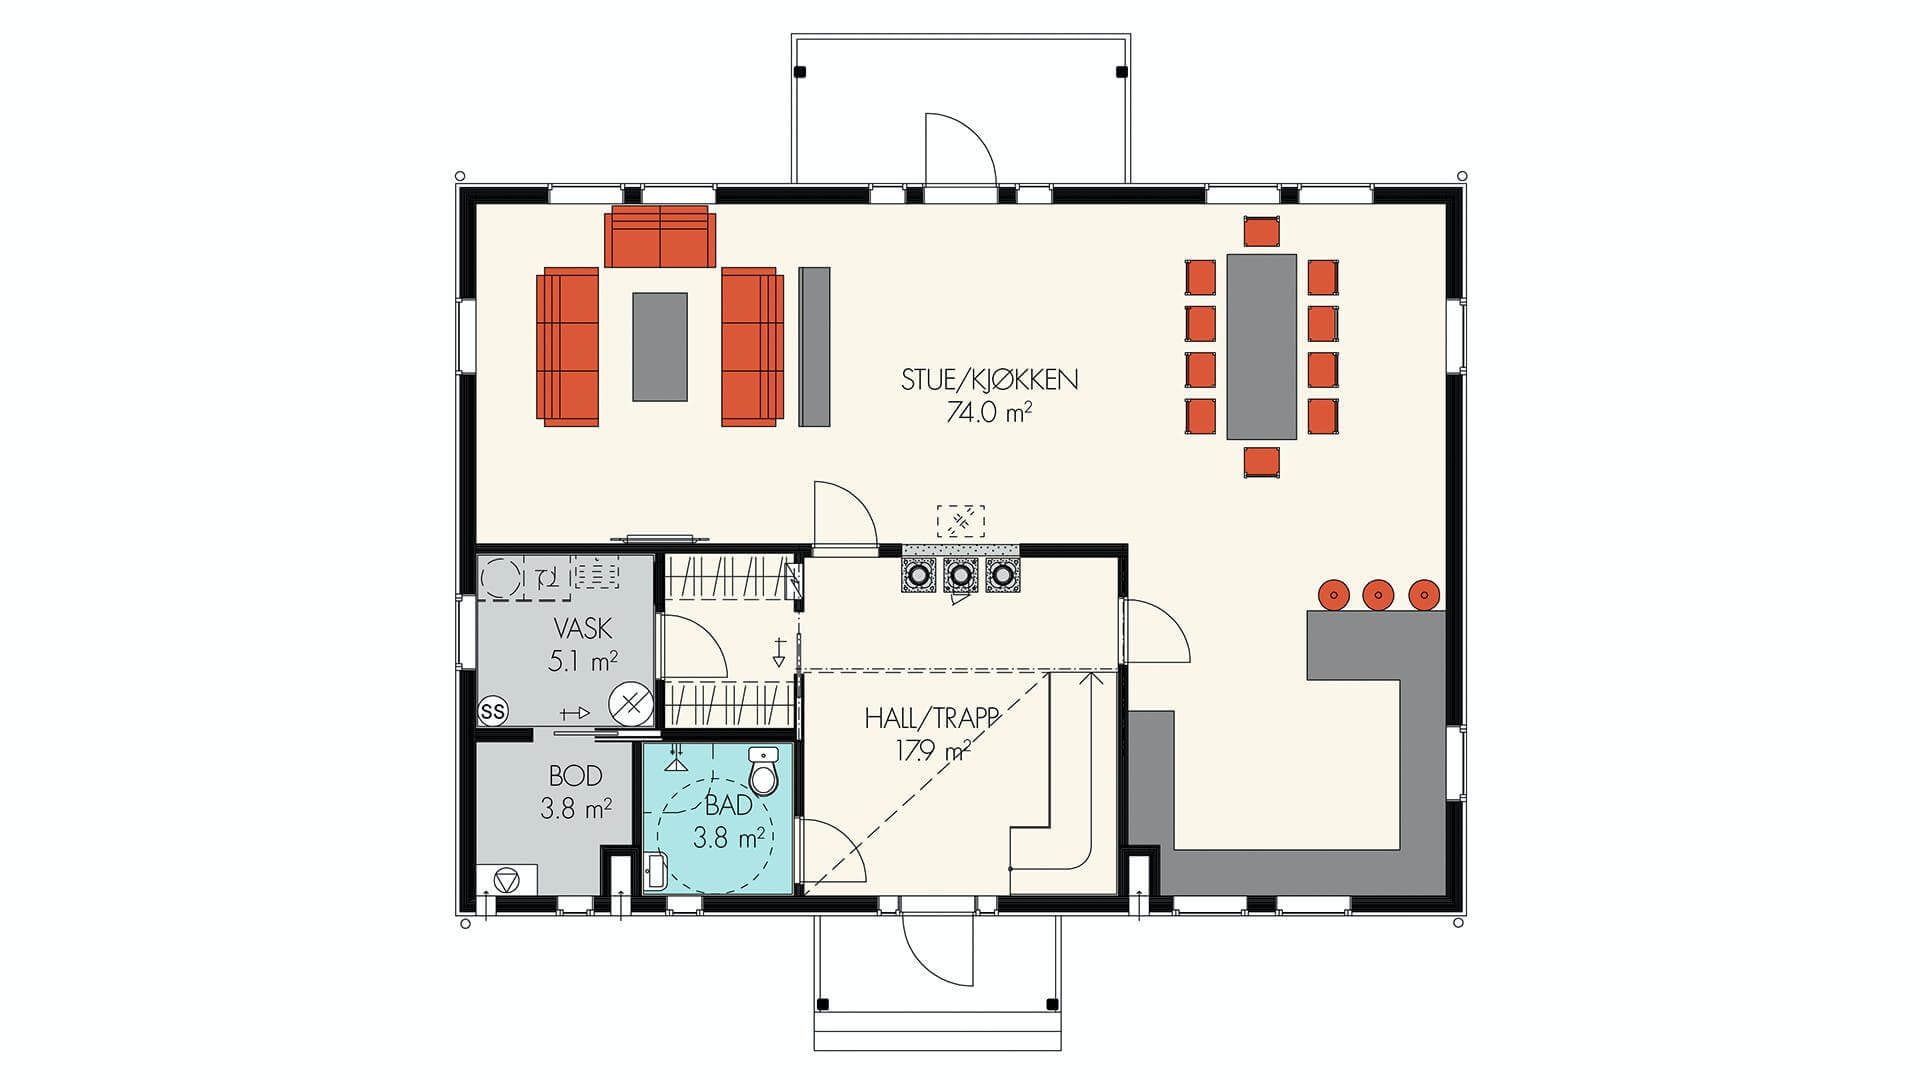 Hovedplanet inneholder bl.a stor stue med åpen løsning til kjøkken og en romslig hall med åpen løsning opp til loftsetasjen.